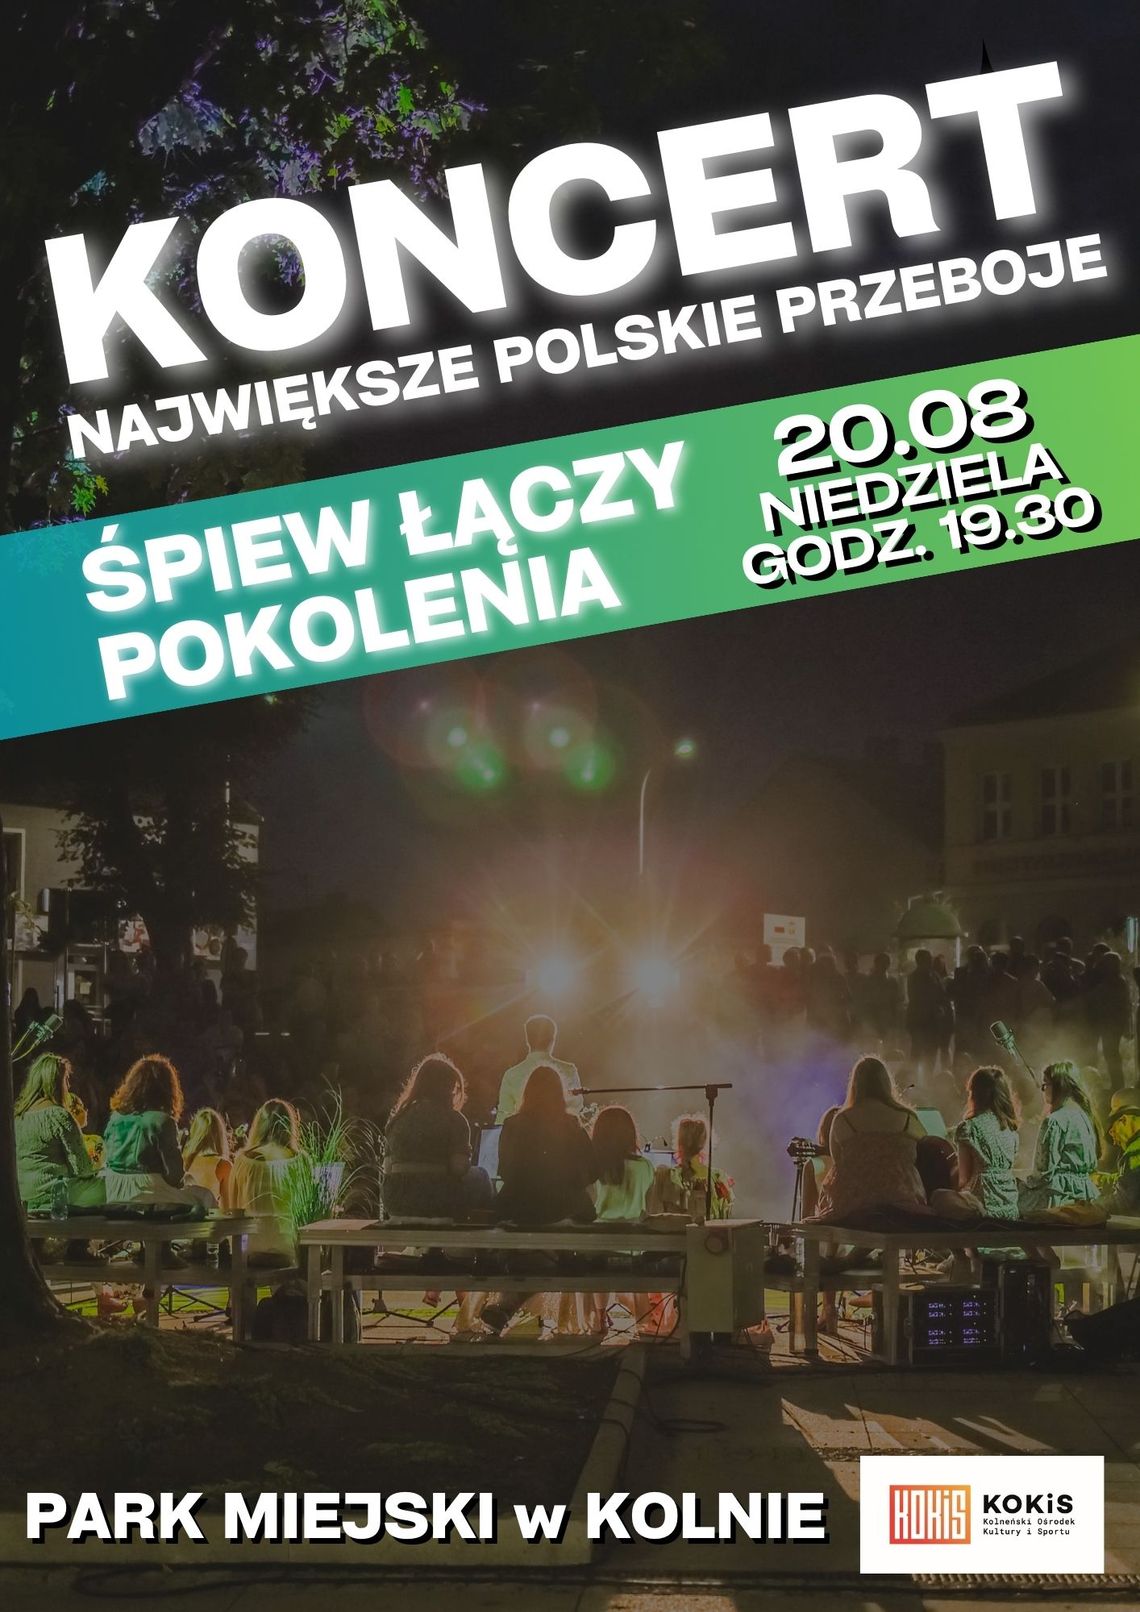 "Śpiew łączy pokolenia" koncert w Kolnie w Parku Miejskim